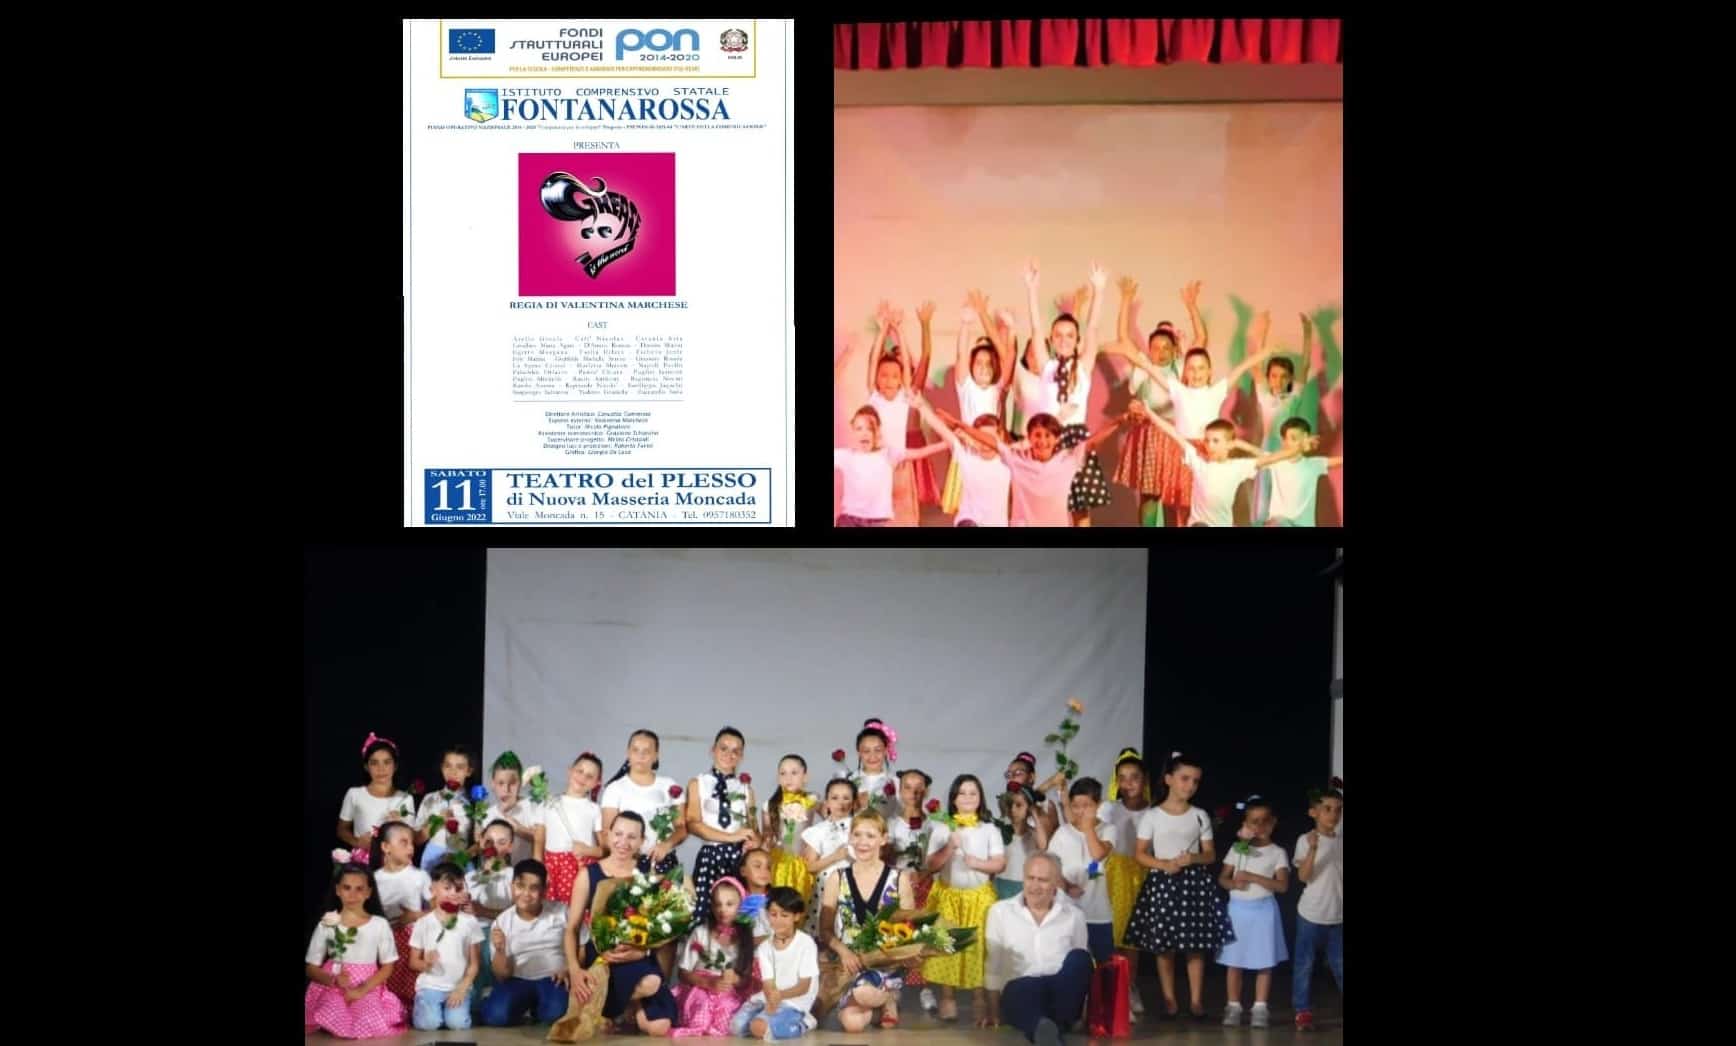 Grande successo per i Musicals “Sister Act” e “Grease” degli alunni deIl’Istituto Comprensivo Statale Fontanarossa